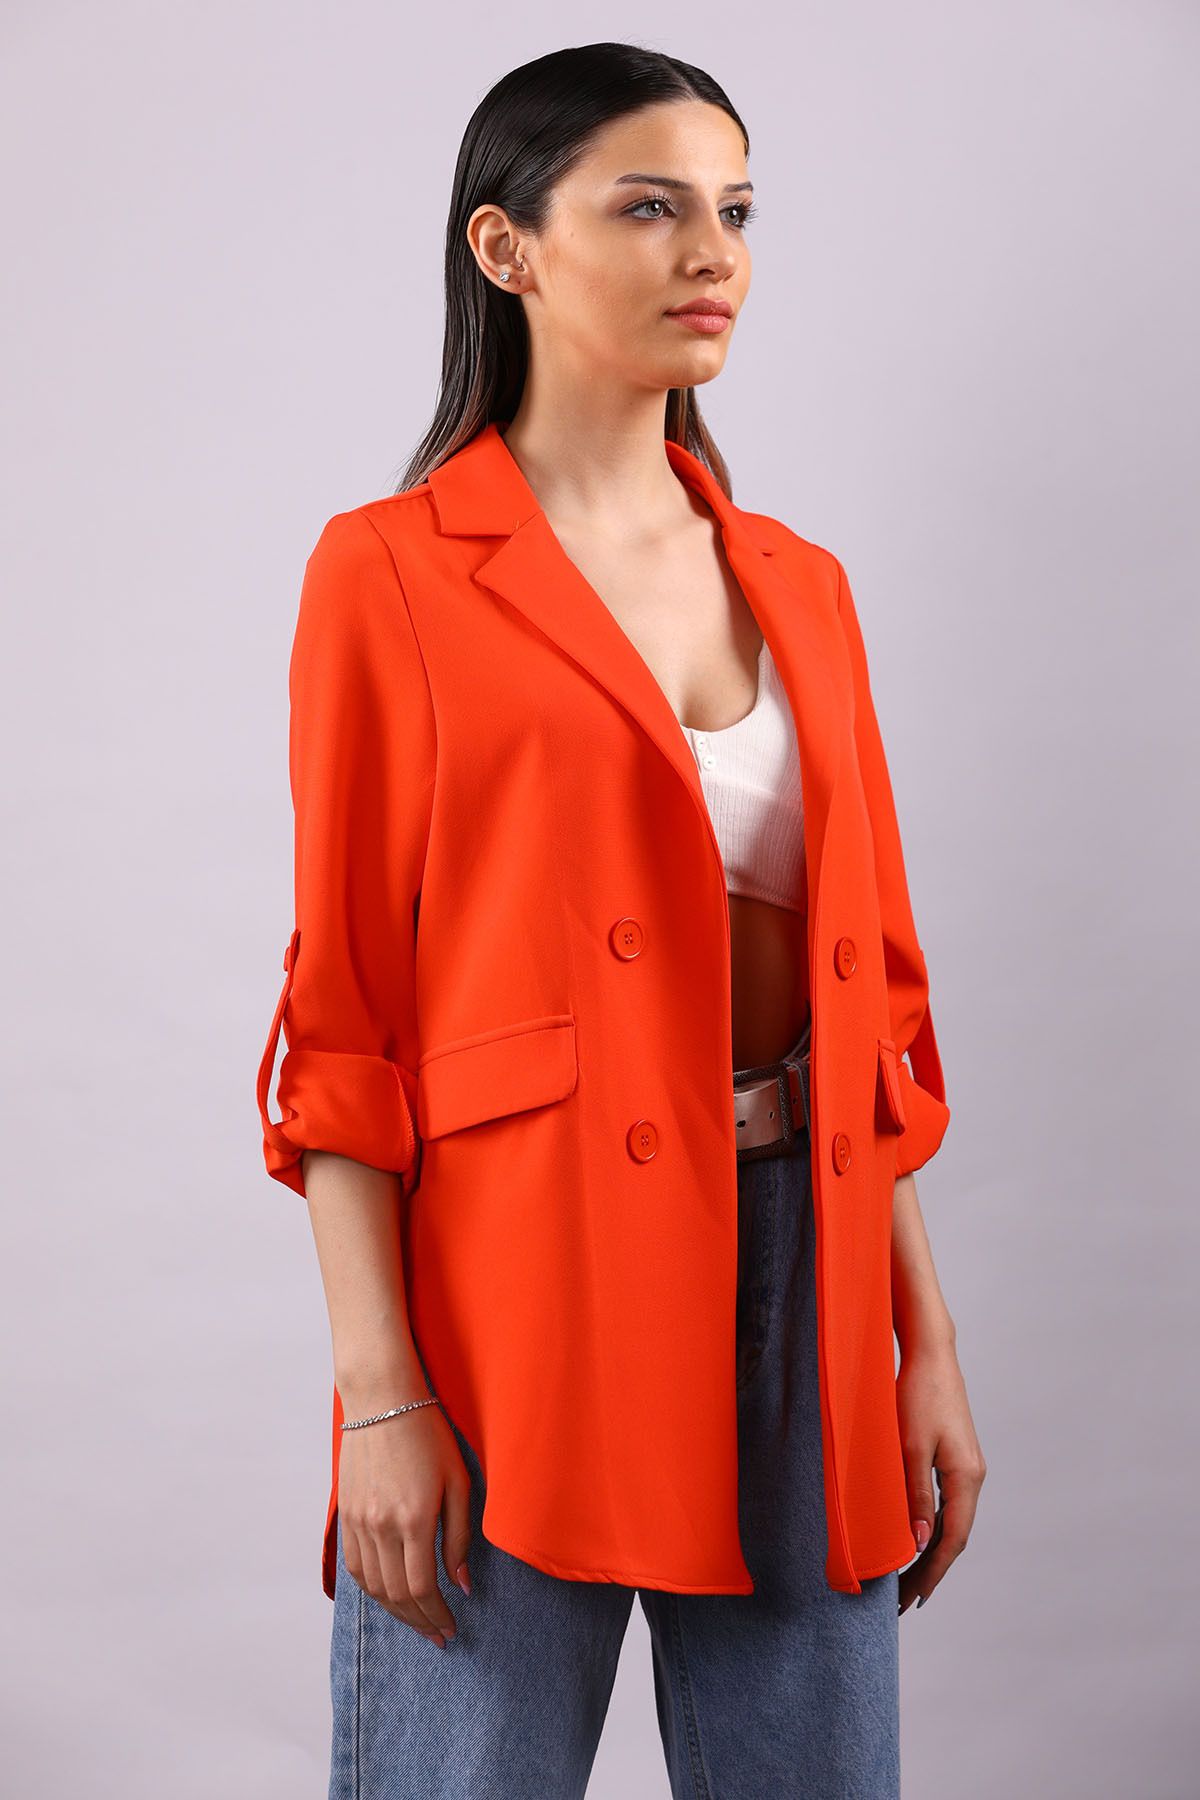 Julude Orange Kadın Yan Yırtmaçlı Ceket